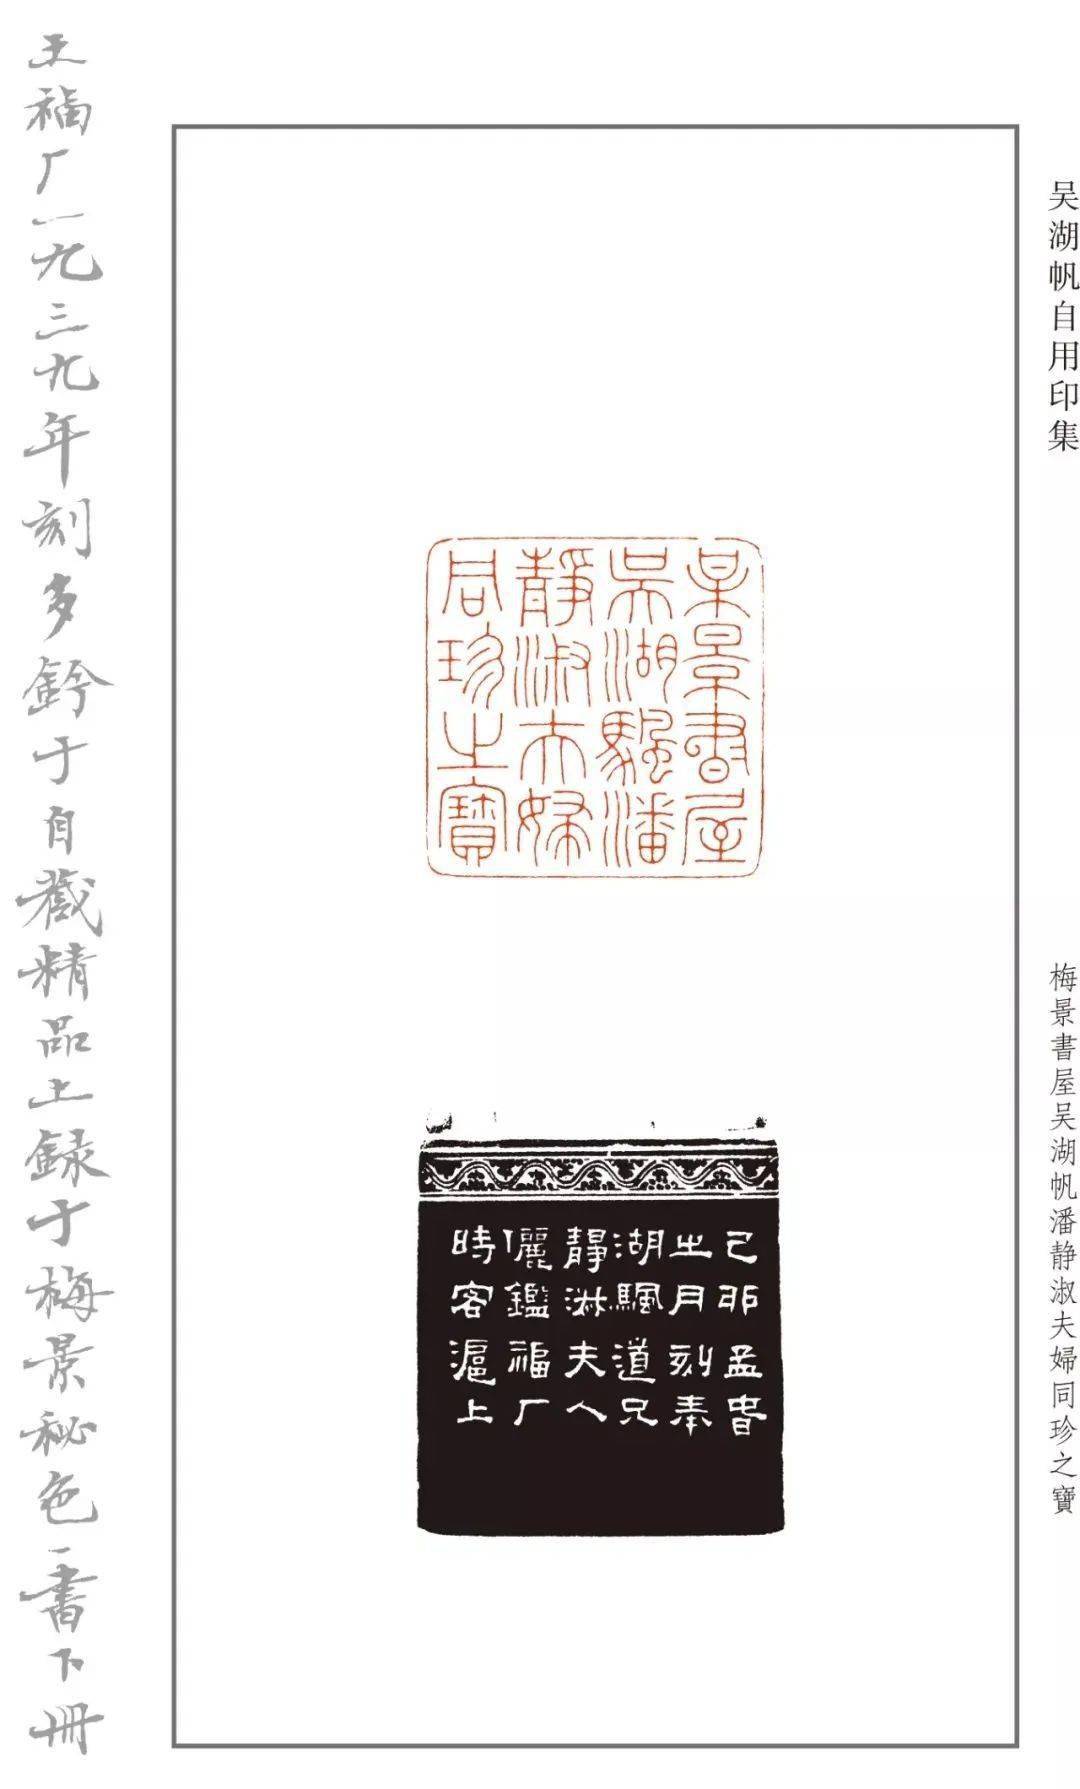 吴湖帆常用印谱图片